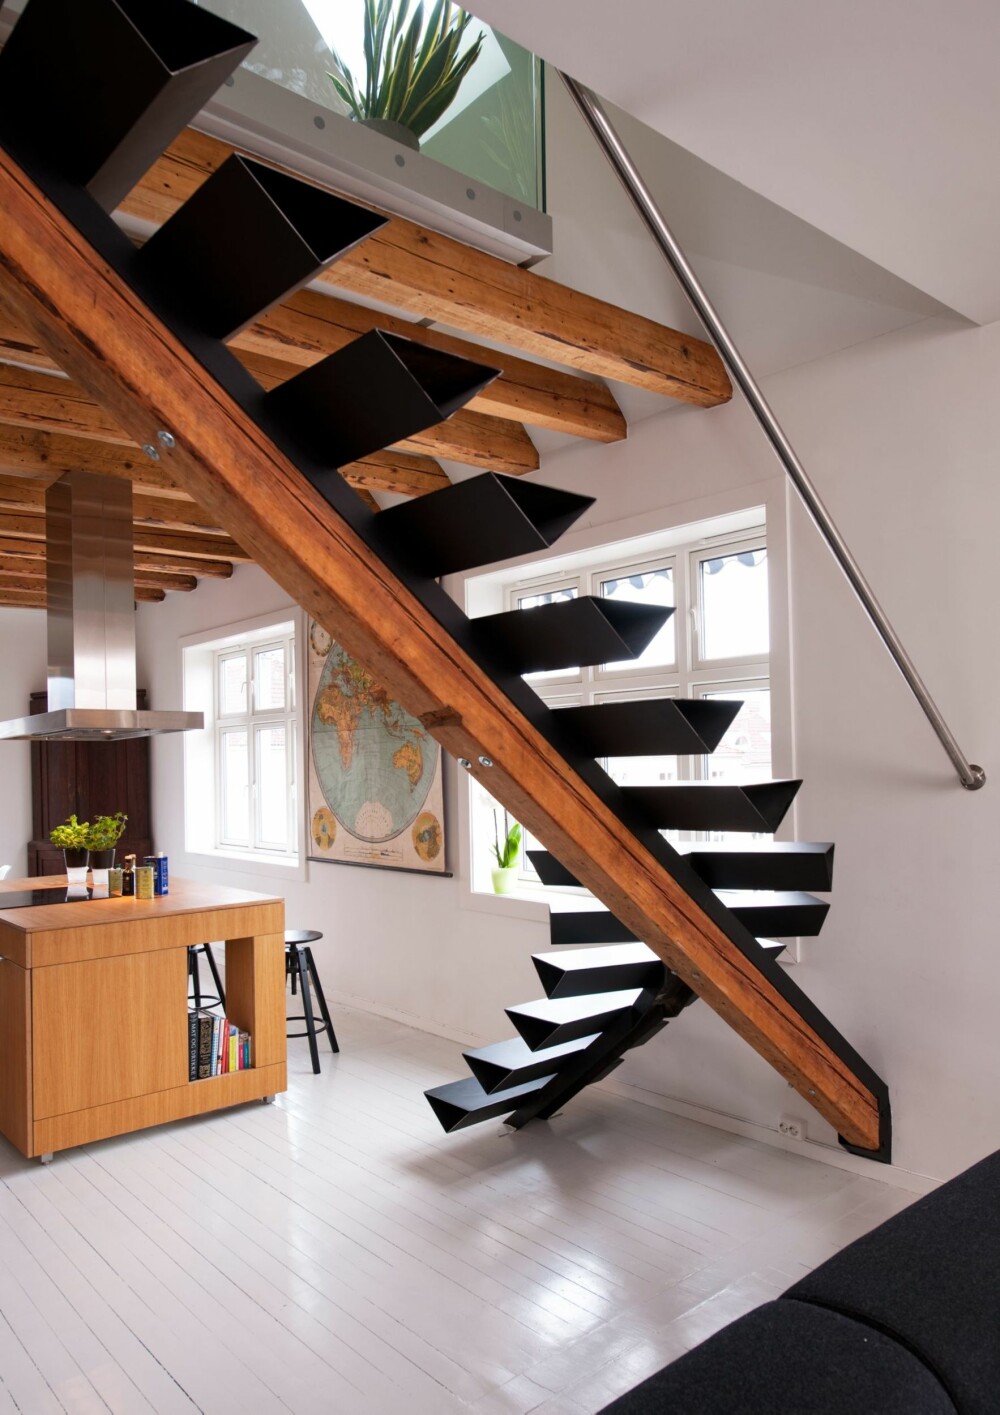 EGEN DESIGN: Arkitekt Aslak Krogness Haanshuus har selv designet trappen og fått den produsert hos metallverkstedet Sophus Bugges
Eftf. i Oslo.